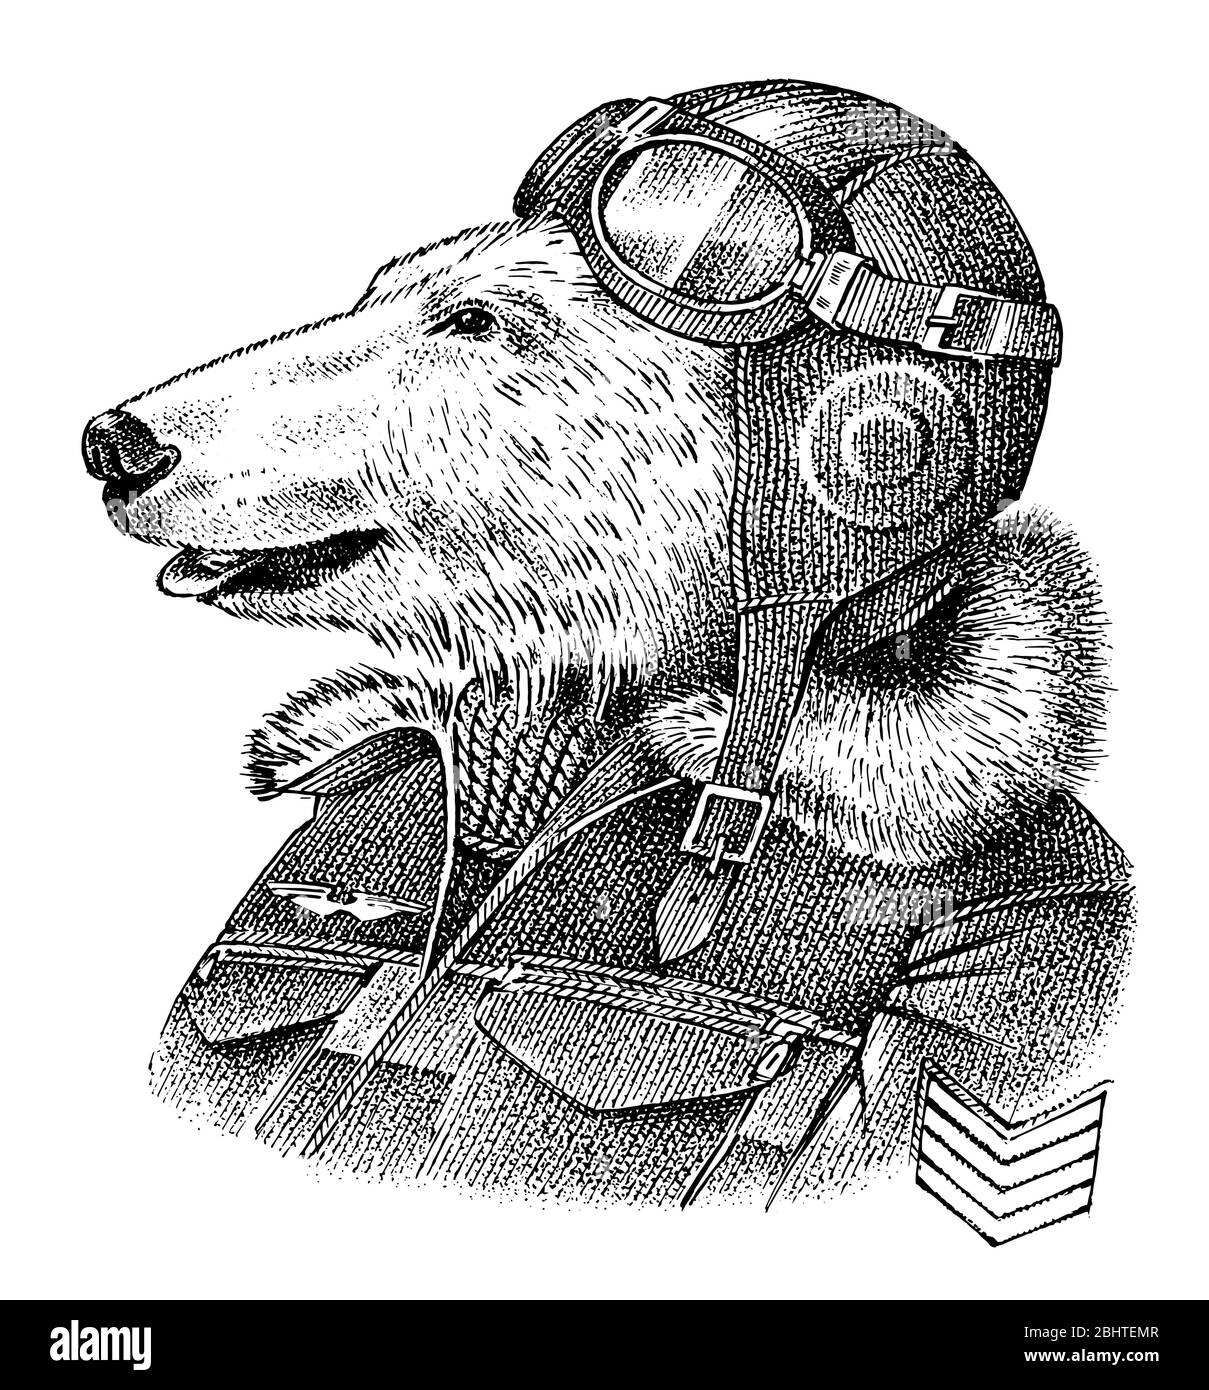 Orso polare vestito in su in pilota o aviatore. Flyboy o skyman. Schizzo del personaggio animale di moda. Antropomorfismo disegnato a mano. Illustrazione con incisione vettoriale Illustrazione Vettoriale